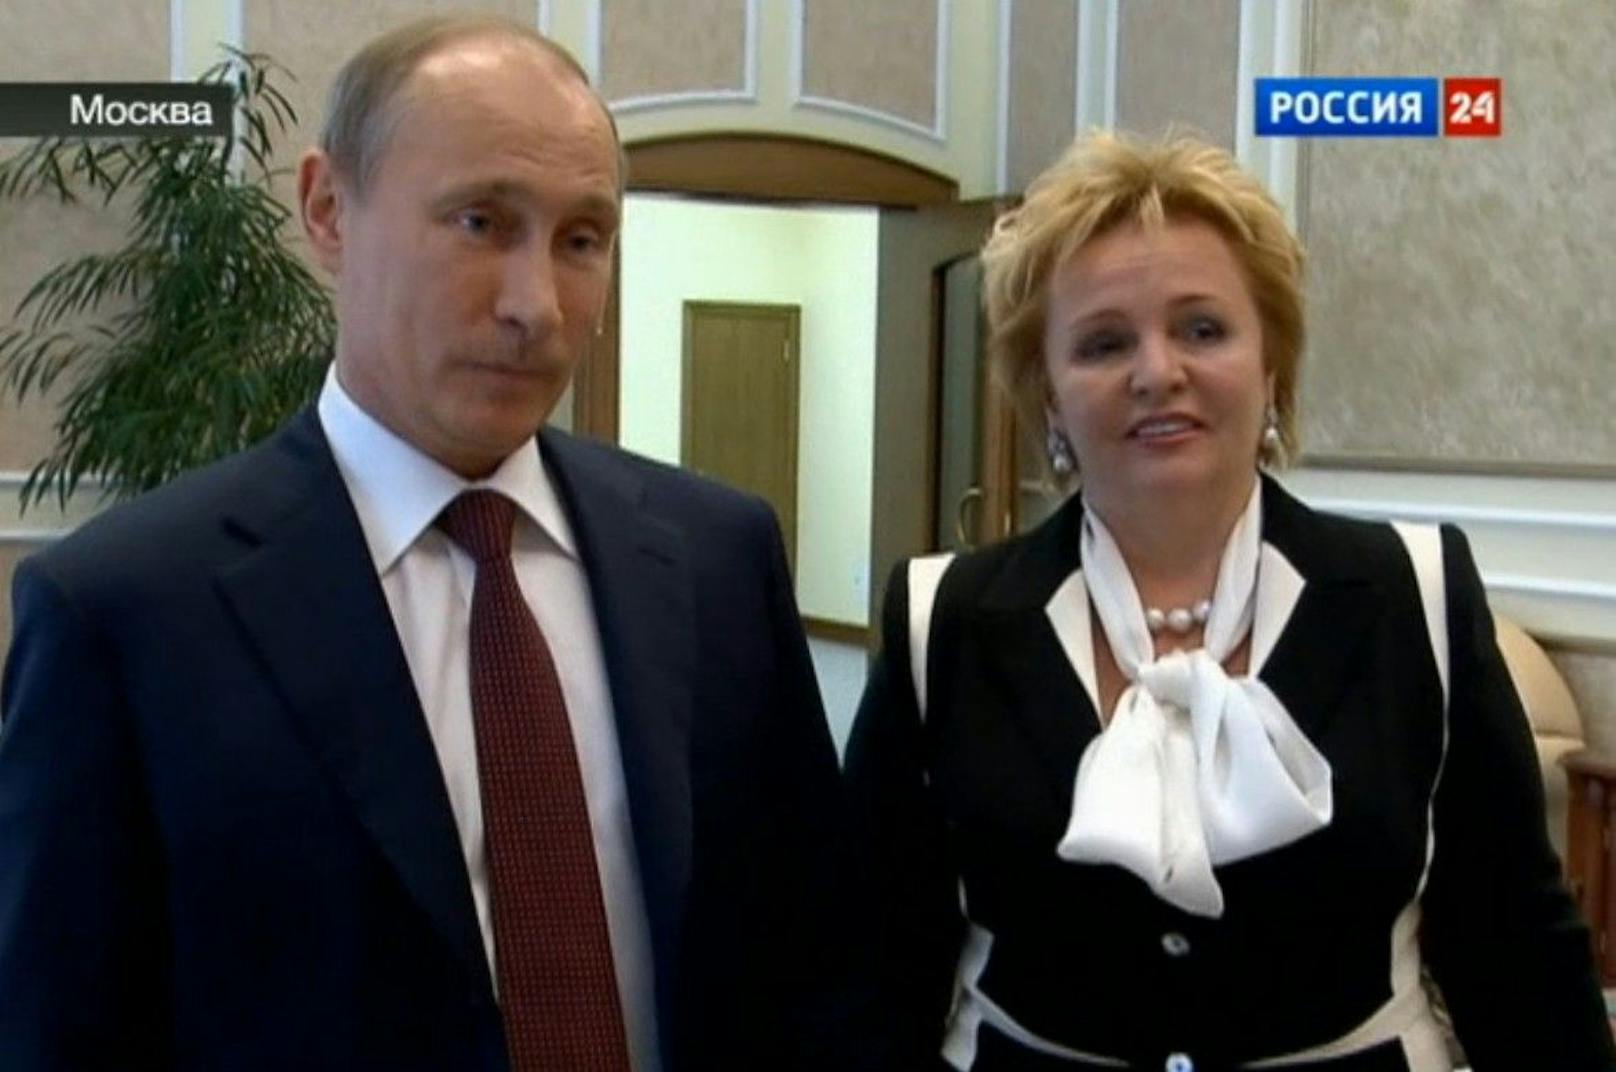 2013 trennte sich Russlands mächtigstes Ehepaar. Offizielle Begründung: Das Präsidentenamt nehme zu viel Zeit in Anspruch.